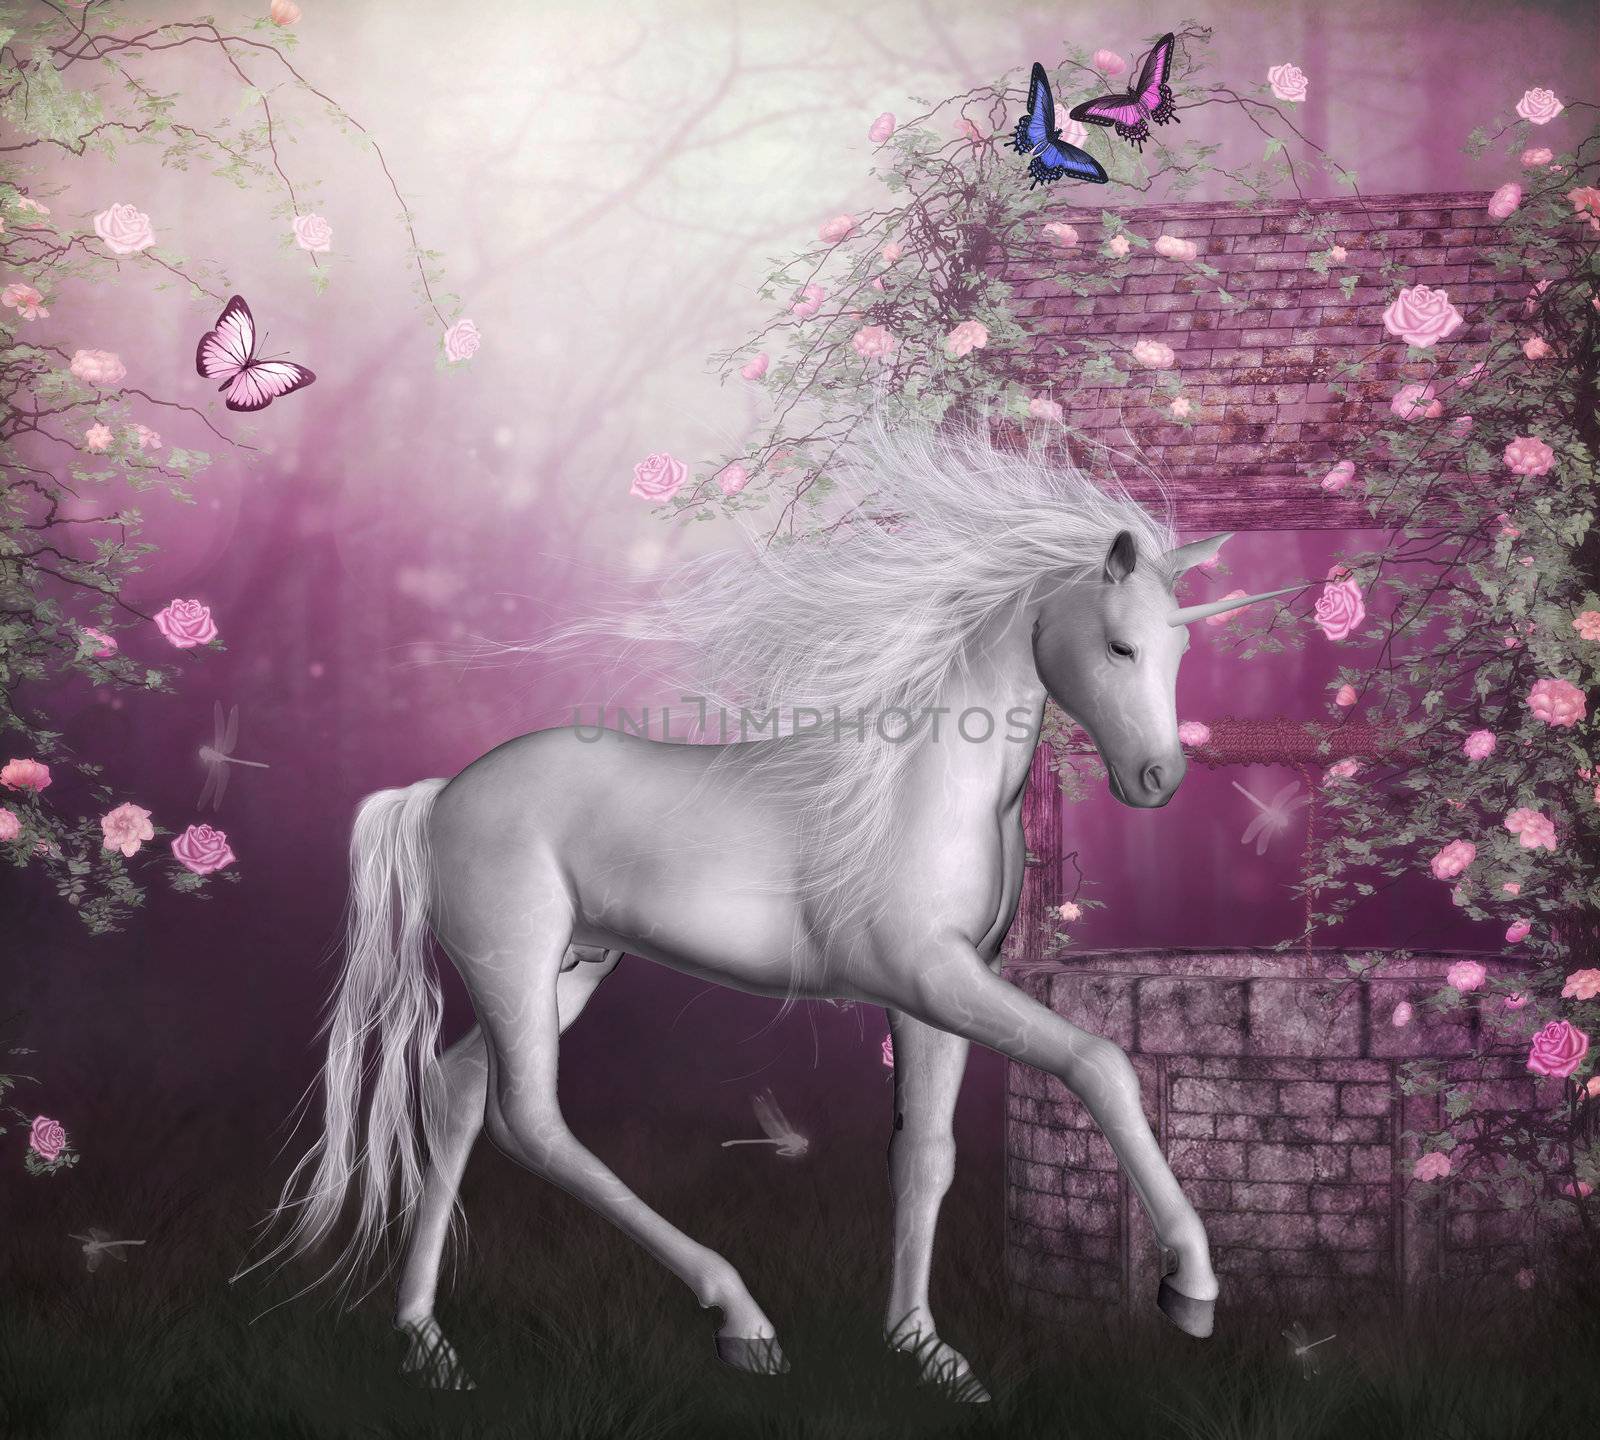 unicorn in a roses garden by ancello